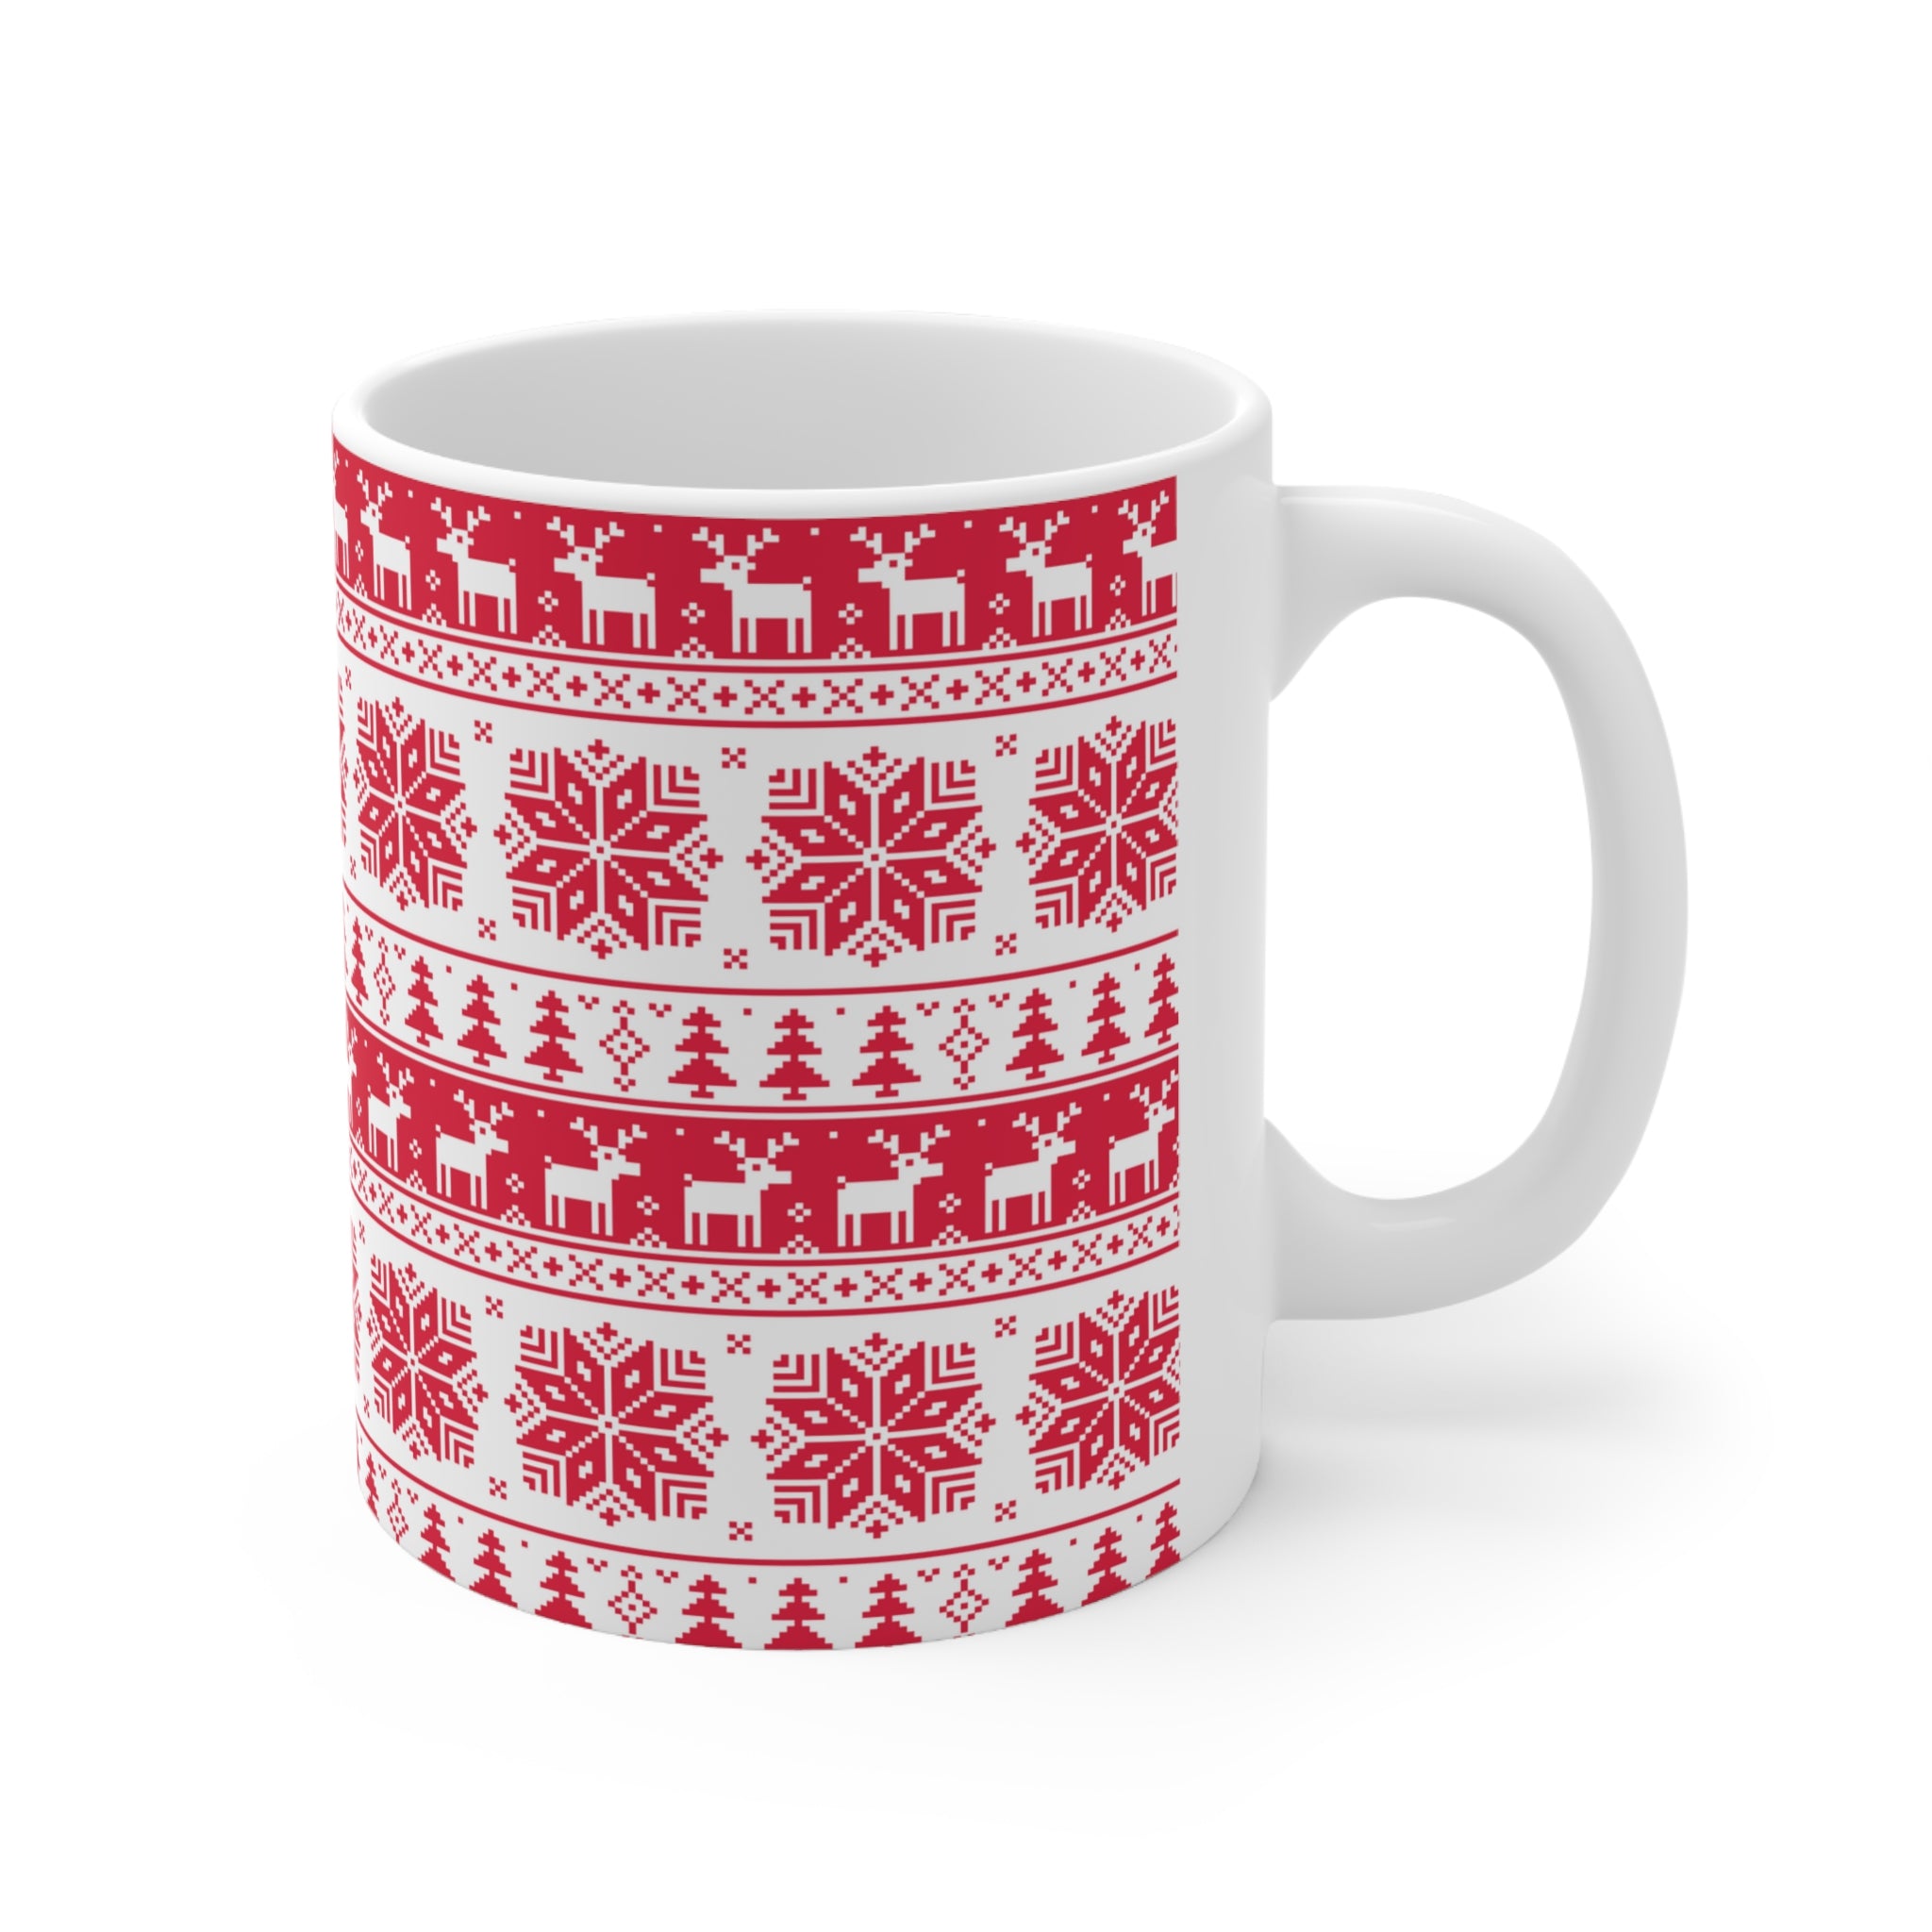 Christmas Ceramic Mug 11oz Red